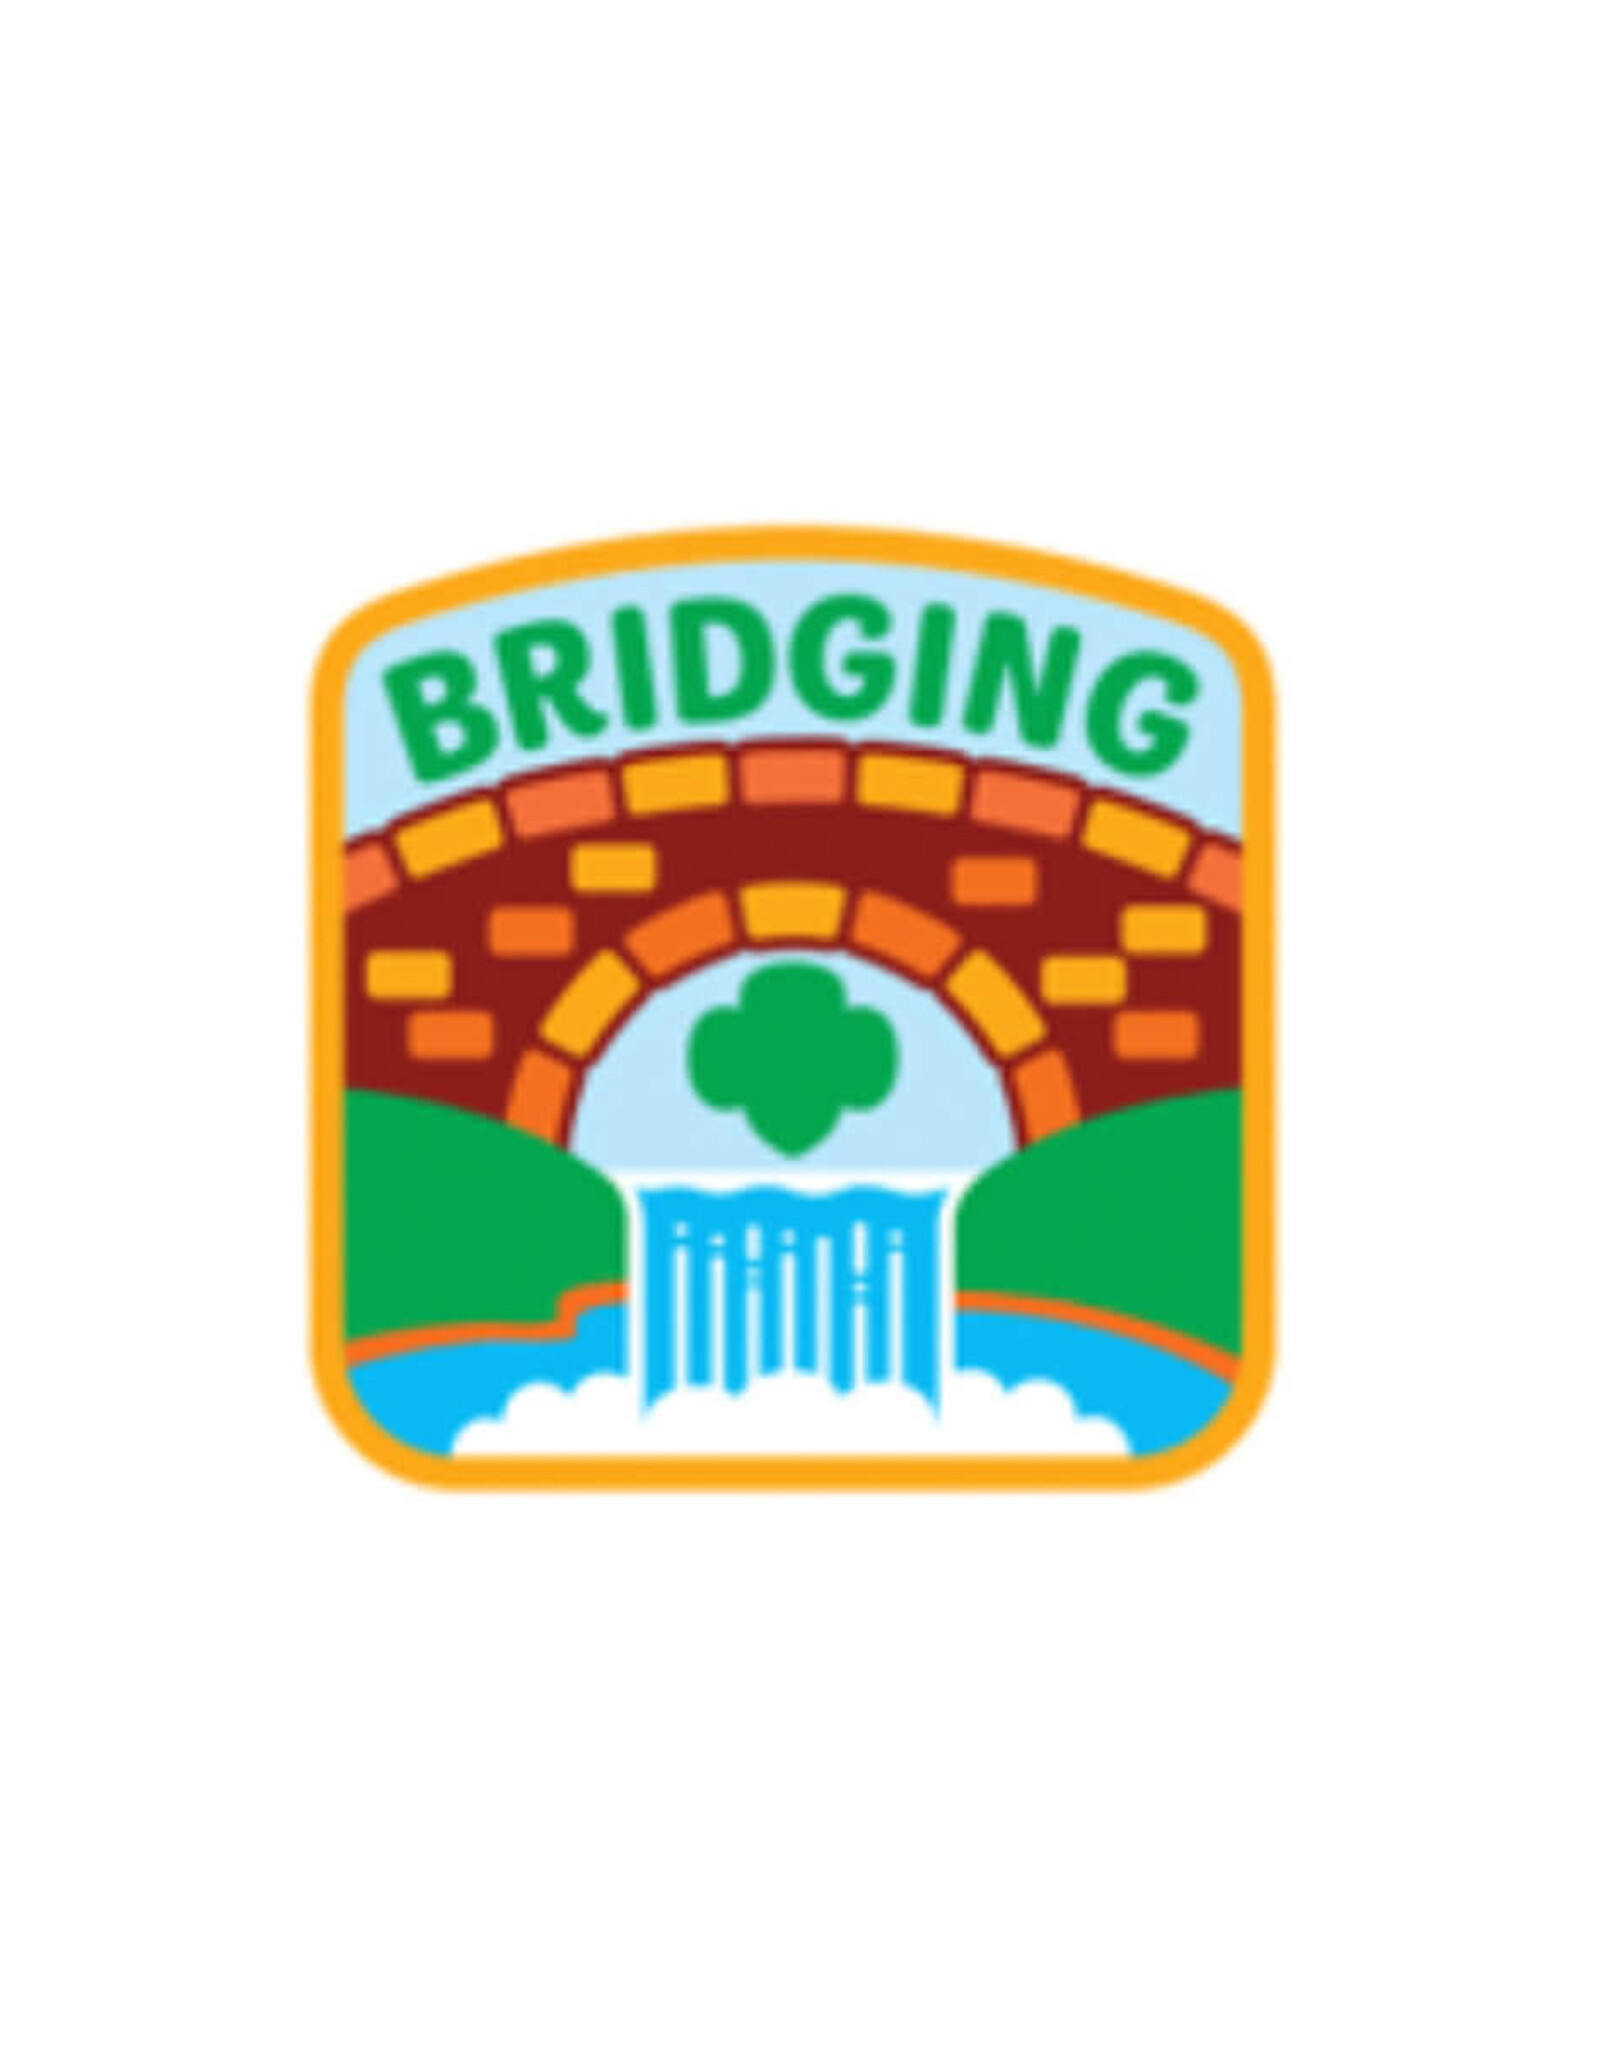 Bridging Waterfall Iron-On Patch